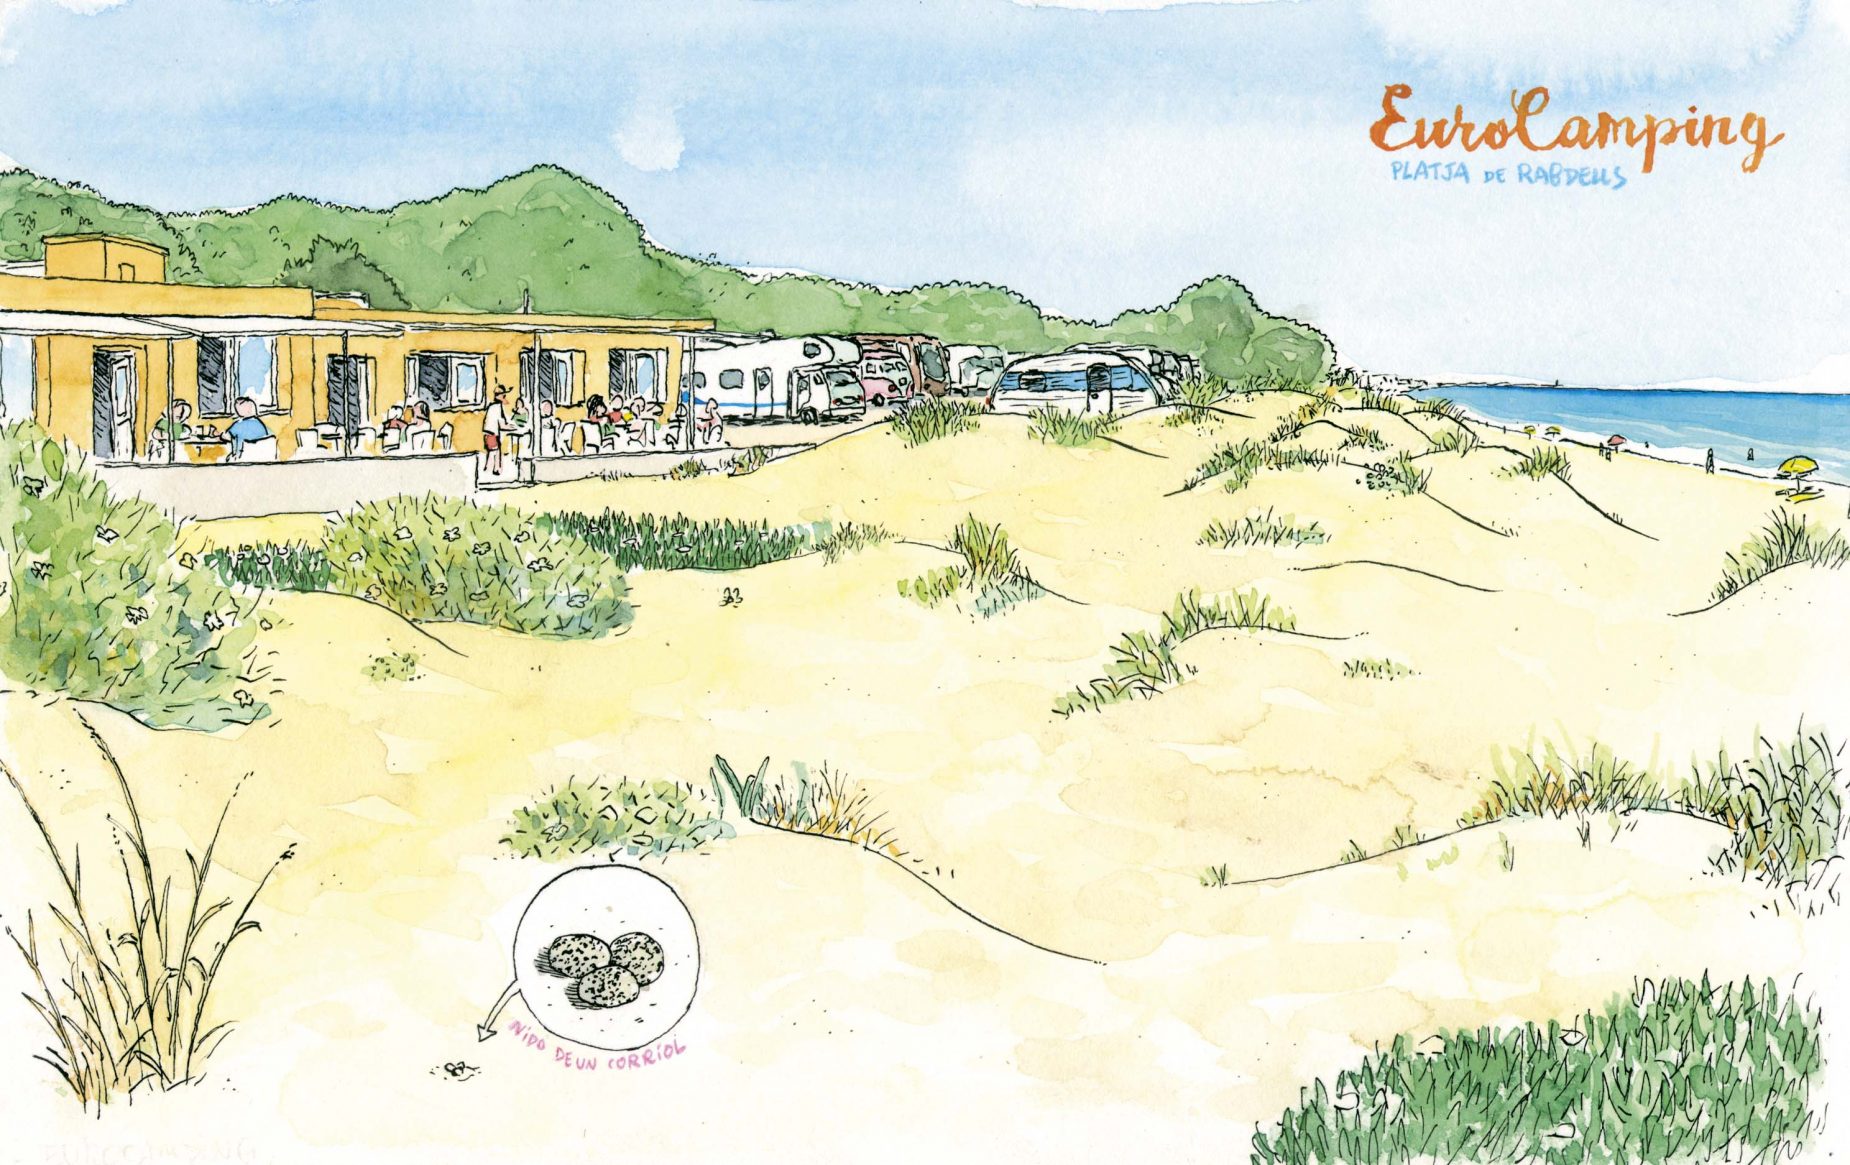 dibujo oliva - Eurocamping camping playa